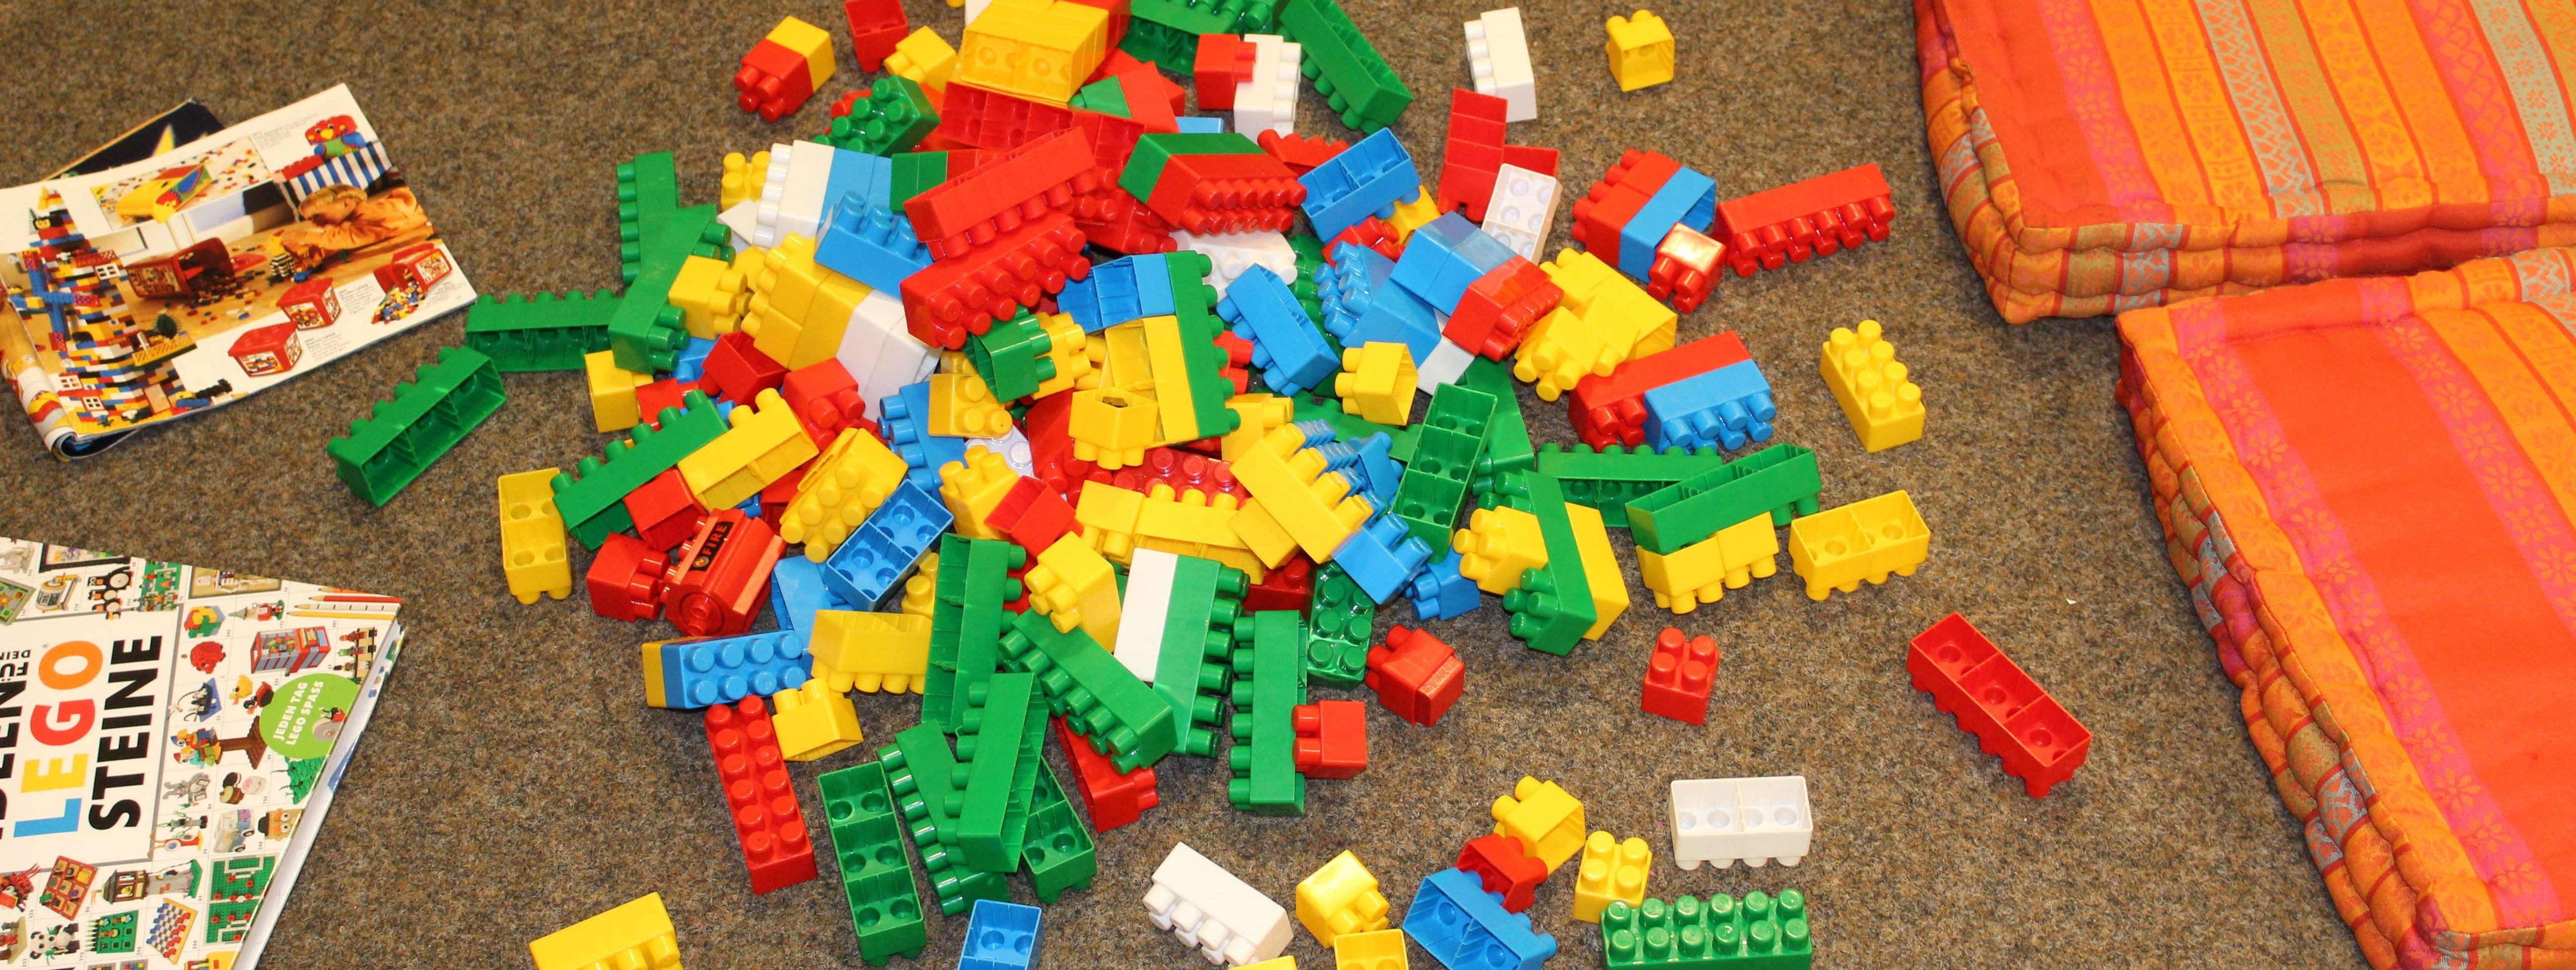 Auf dem braunen Teppich liegen die bunten Lego-Duplo-Steine, drumherum liegen Sitzkissen, auf denen die großen und kleinen Baumeister platznehmen können.